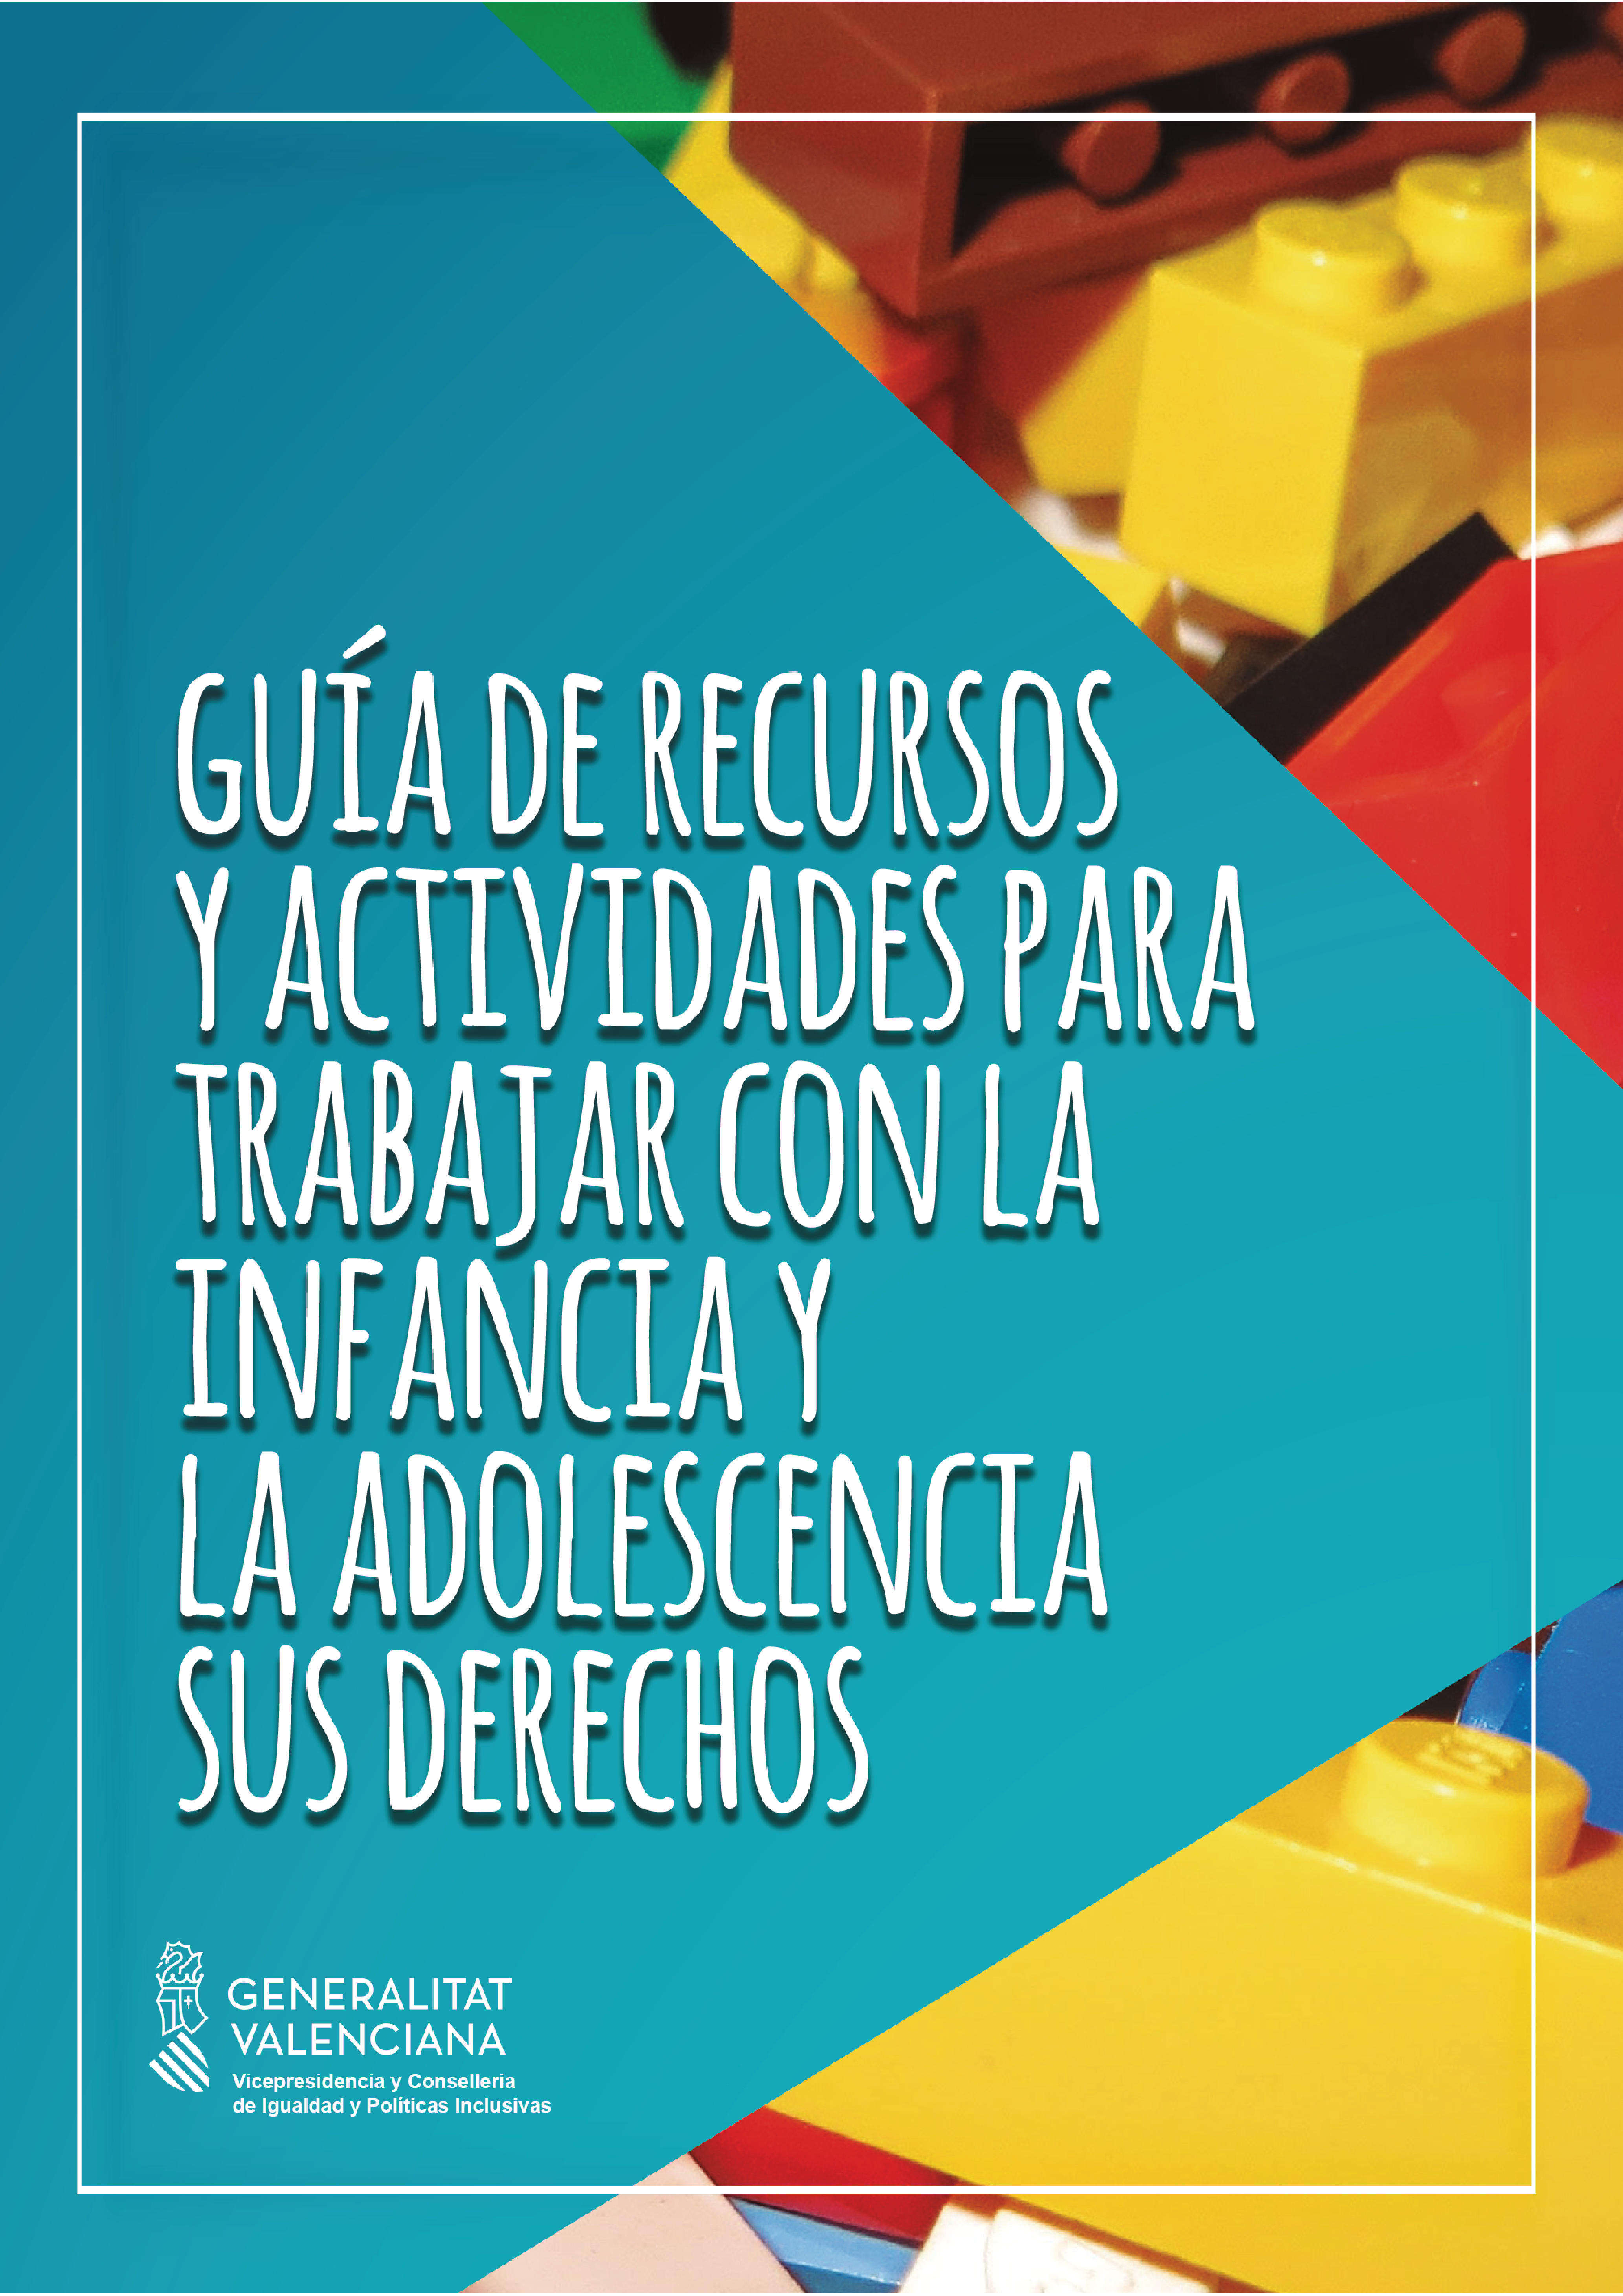 Guia de recursos i activitats per a treballar amb la infància i l'adolescència els seus drets